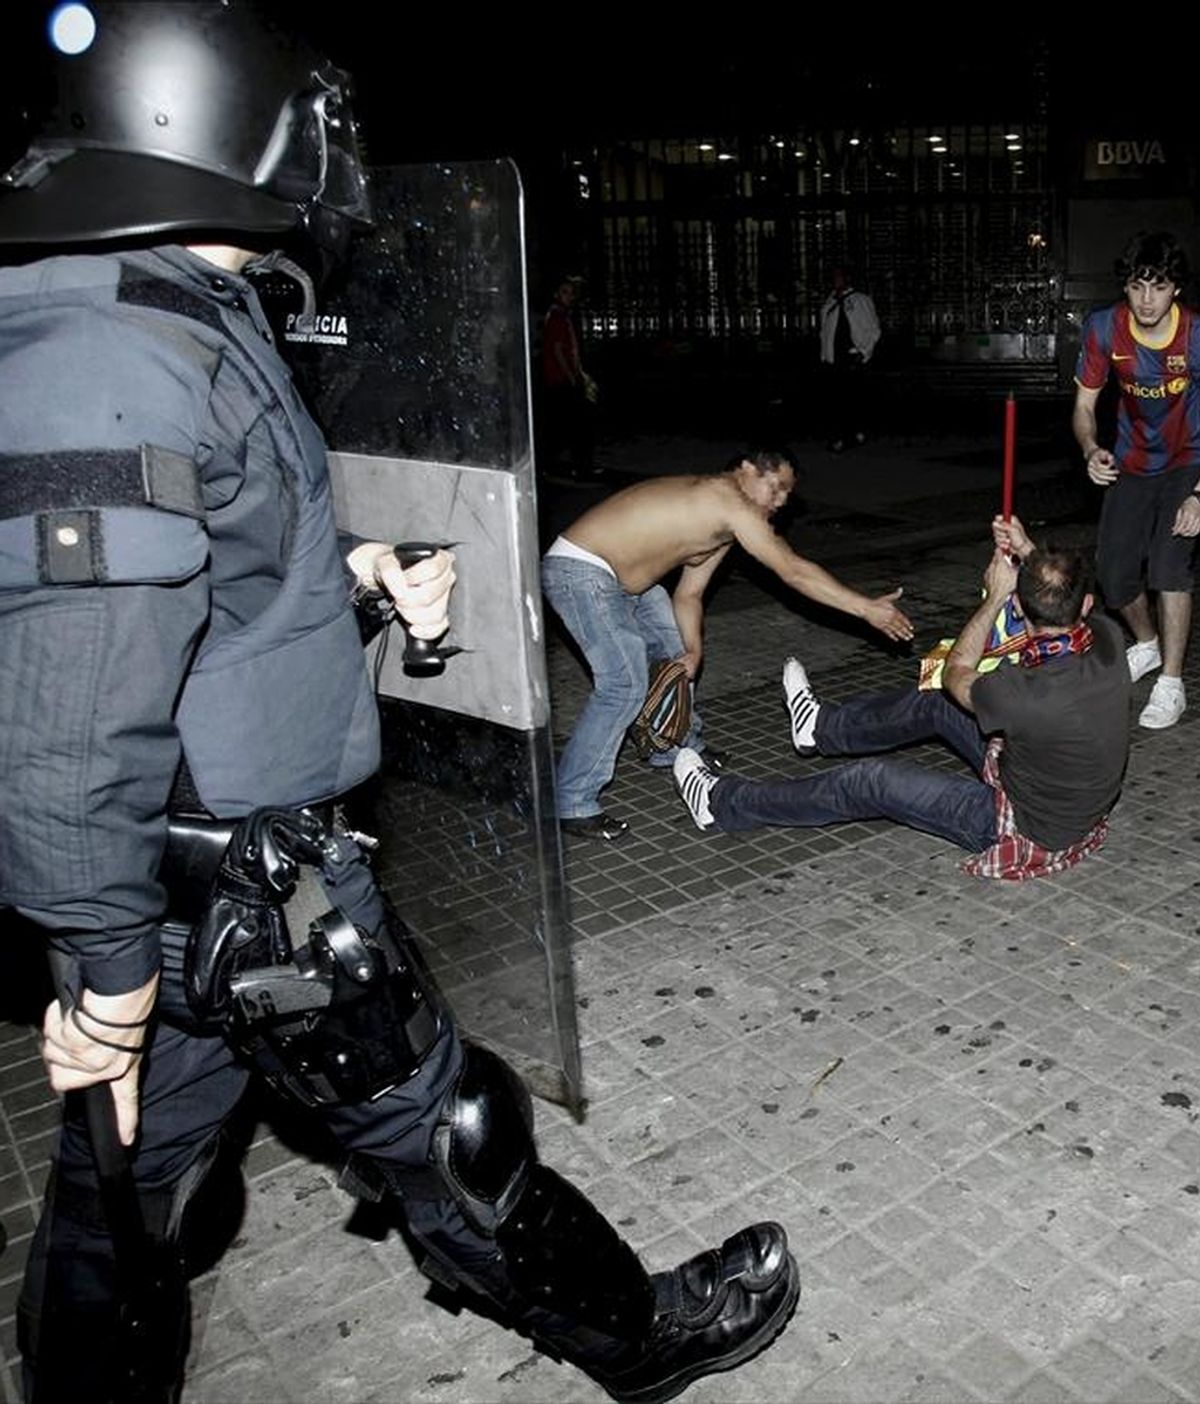 Los Mossos d'Esquadra y la Guardia Urbana de Barcelona han detenido a un total de 17 personas durante la celebración anoche y esta madrugada del título de liga del FC Barcelona en el centro de la capital catalana, la mayoría por desórdenes públicos. EFE